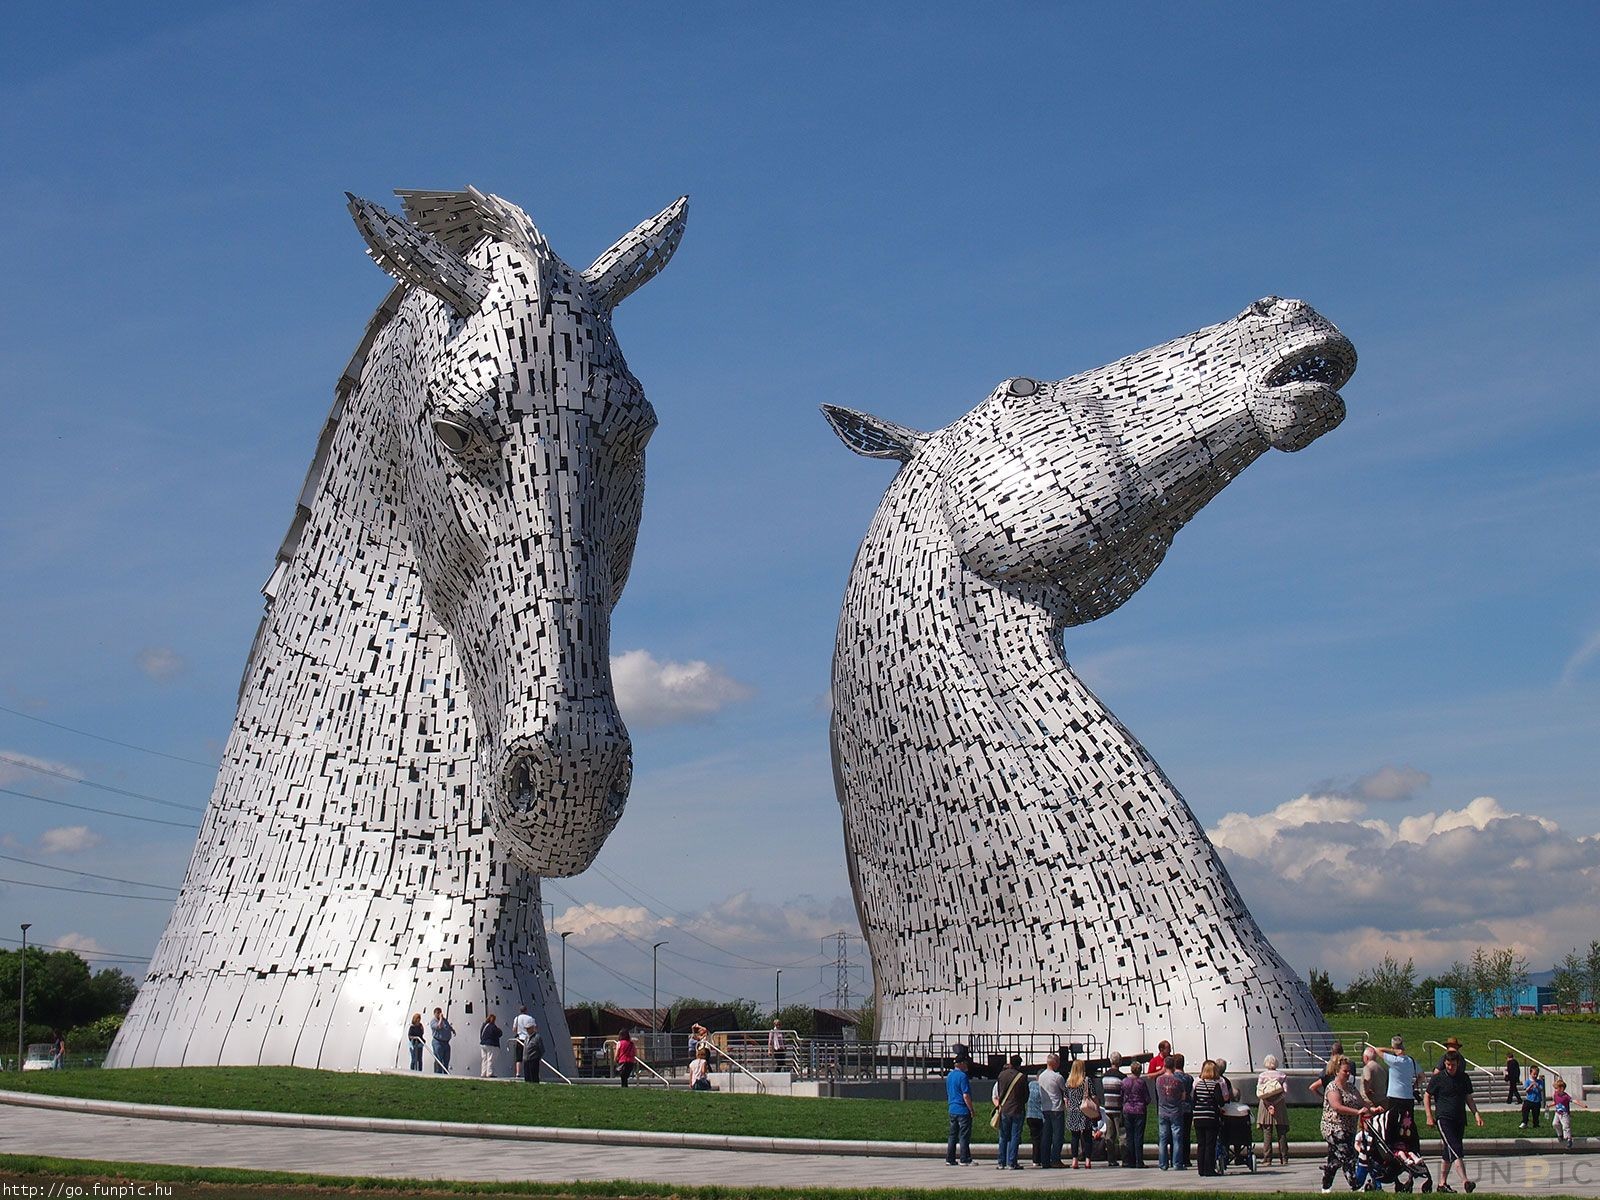 gelijktijdig pint Verhoog jezelf Two 30 meter tall horse heads in Scotland | Funpic.hu